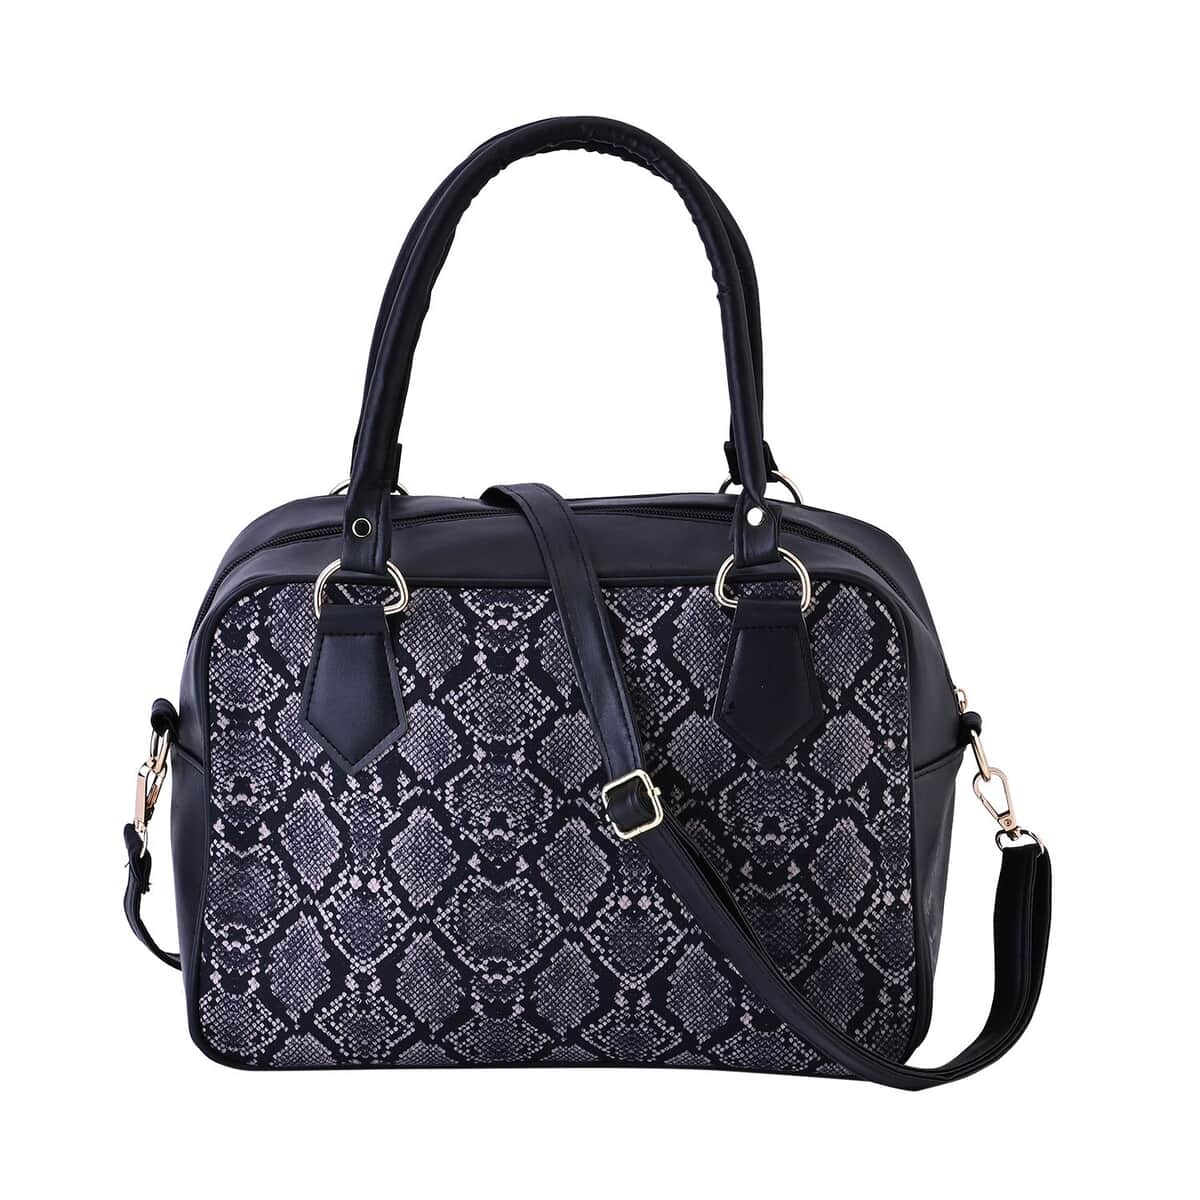 Black Snake Skin Print Faux Leather Crossbody Bag with Detachable Shoulder Strap image number 0